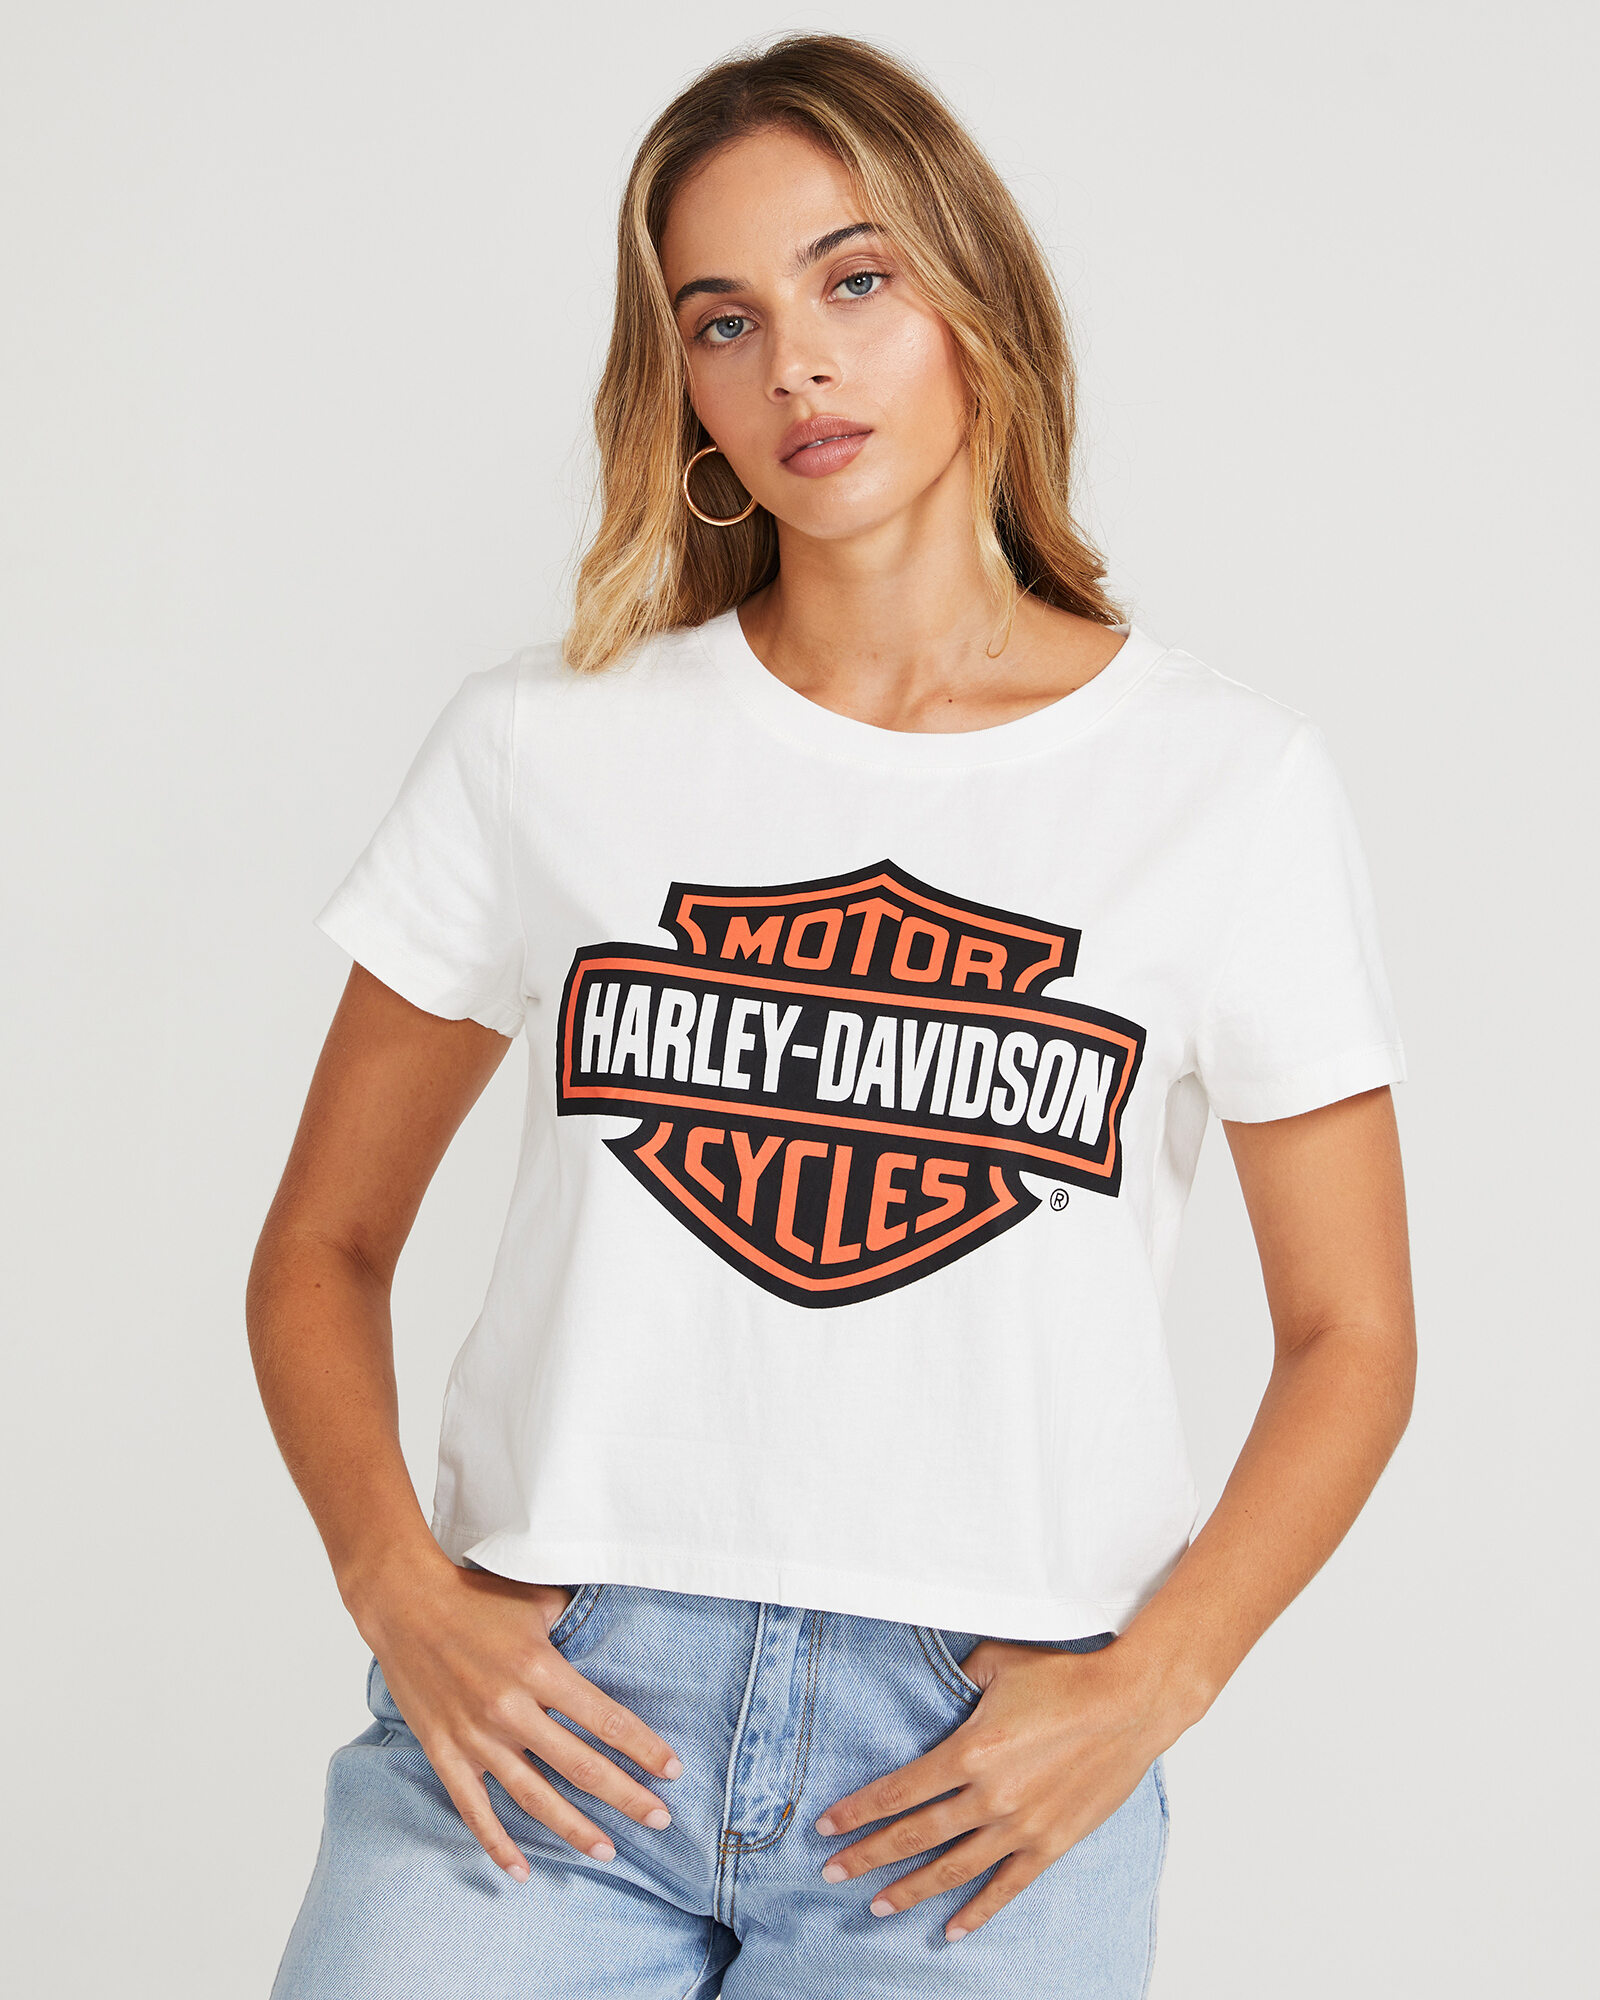 Harley Davidson T Shirt Logo Promotion Off70